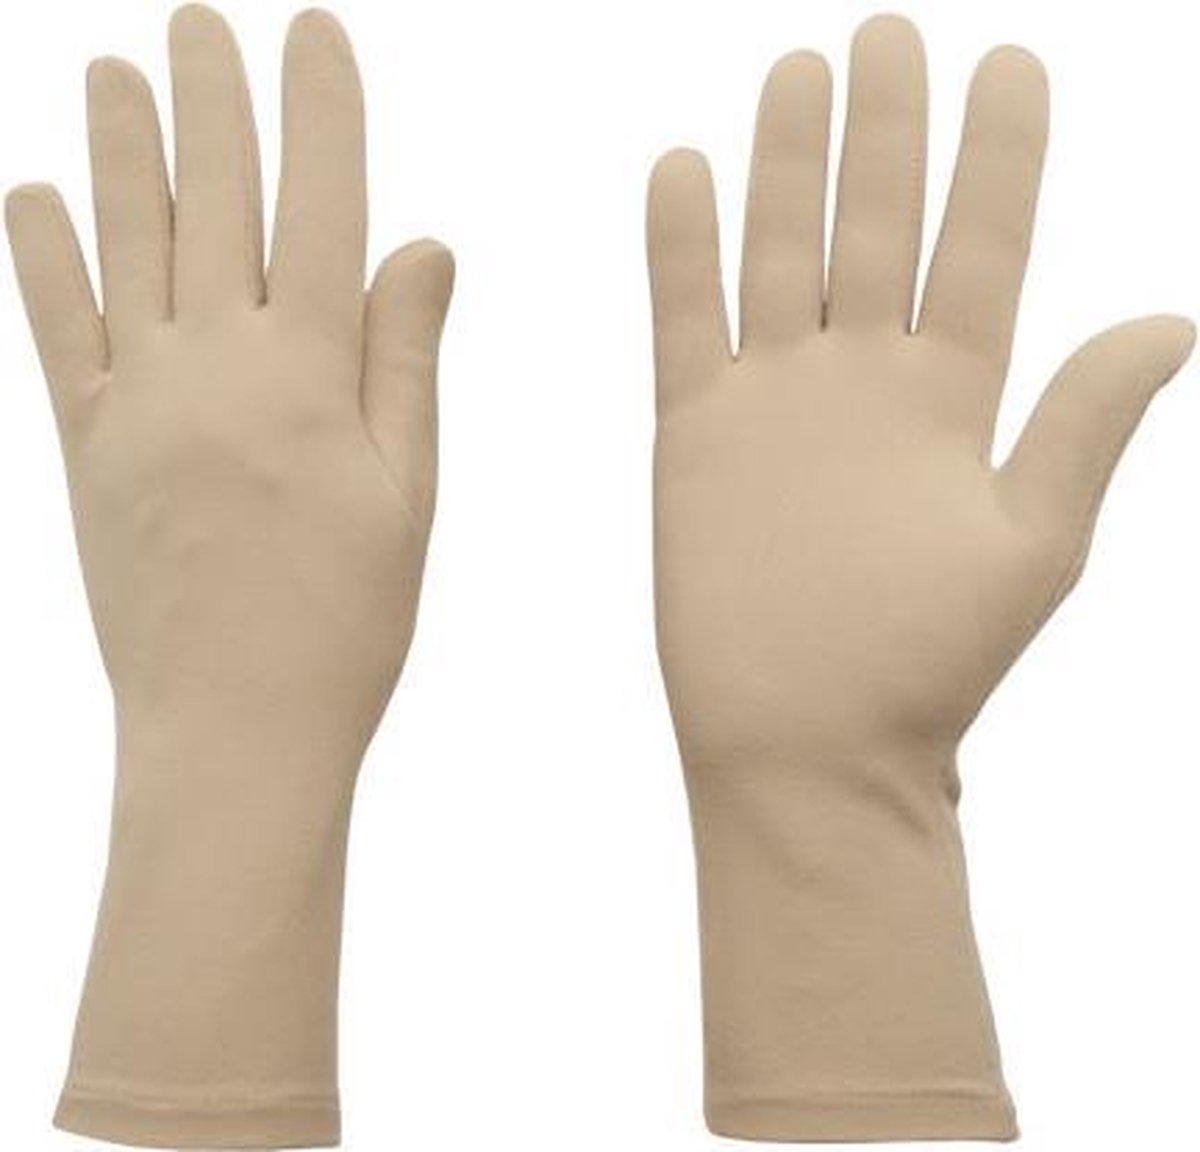 Protexgloves Original handschoenen beige large - Tegen eczeem, zon gevoeligheid en andere chronische huid- en handaandoeningen